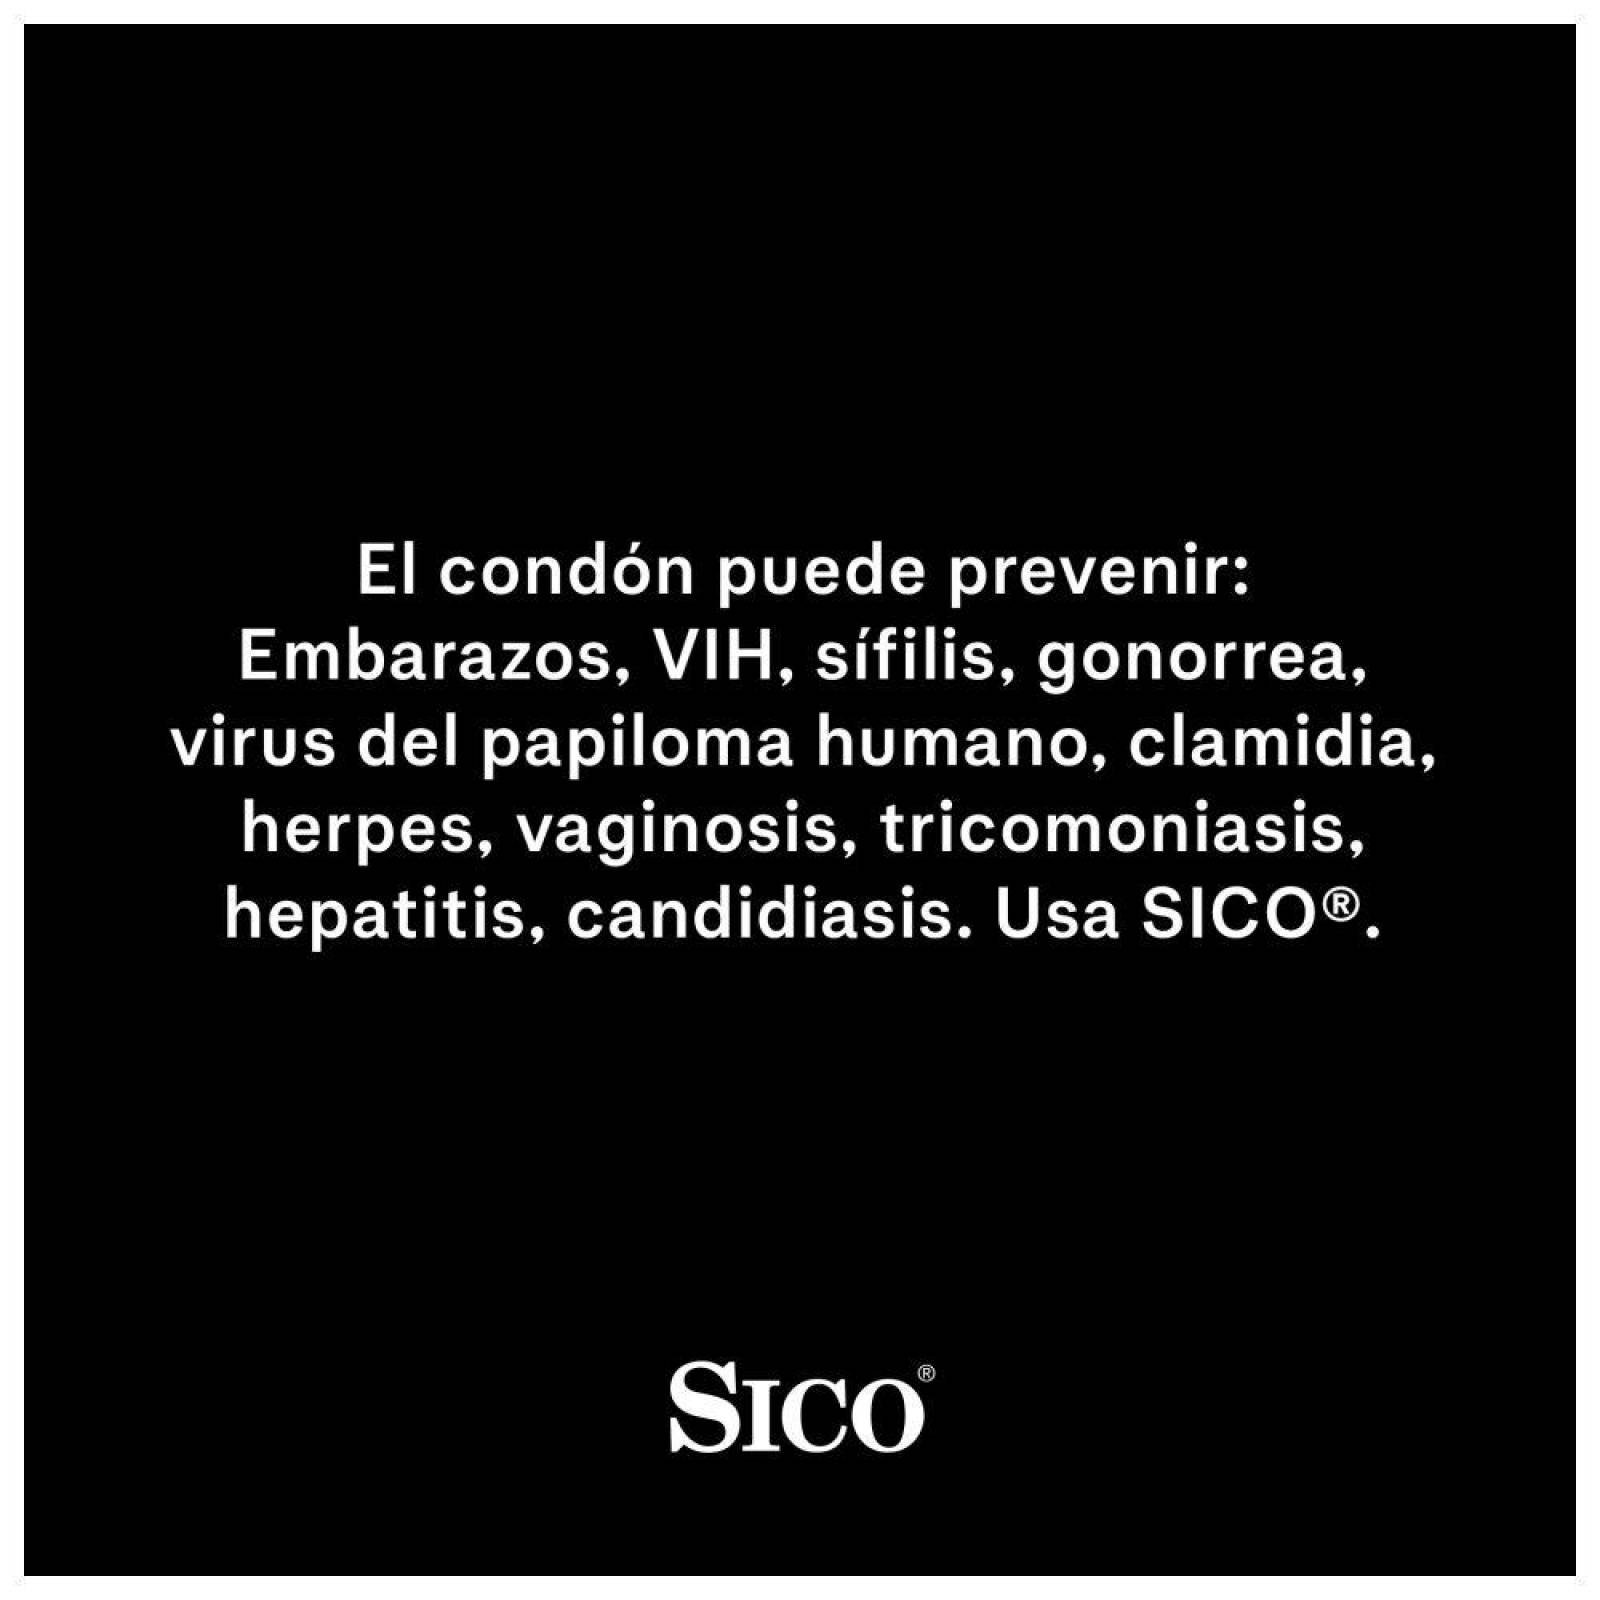 Sico Safety 3 condones 